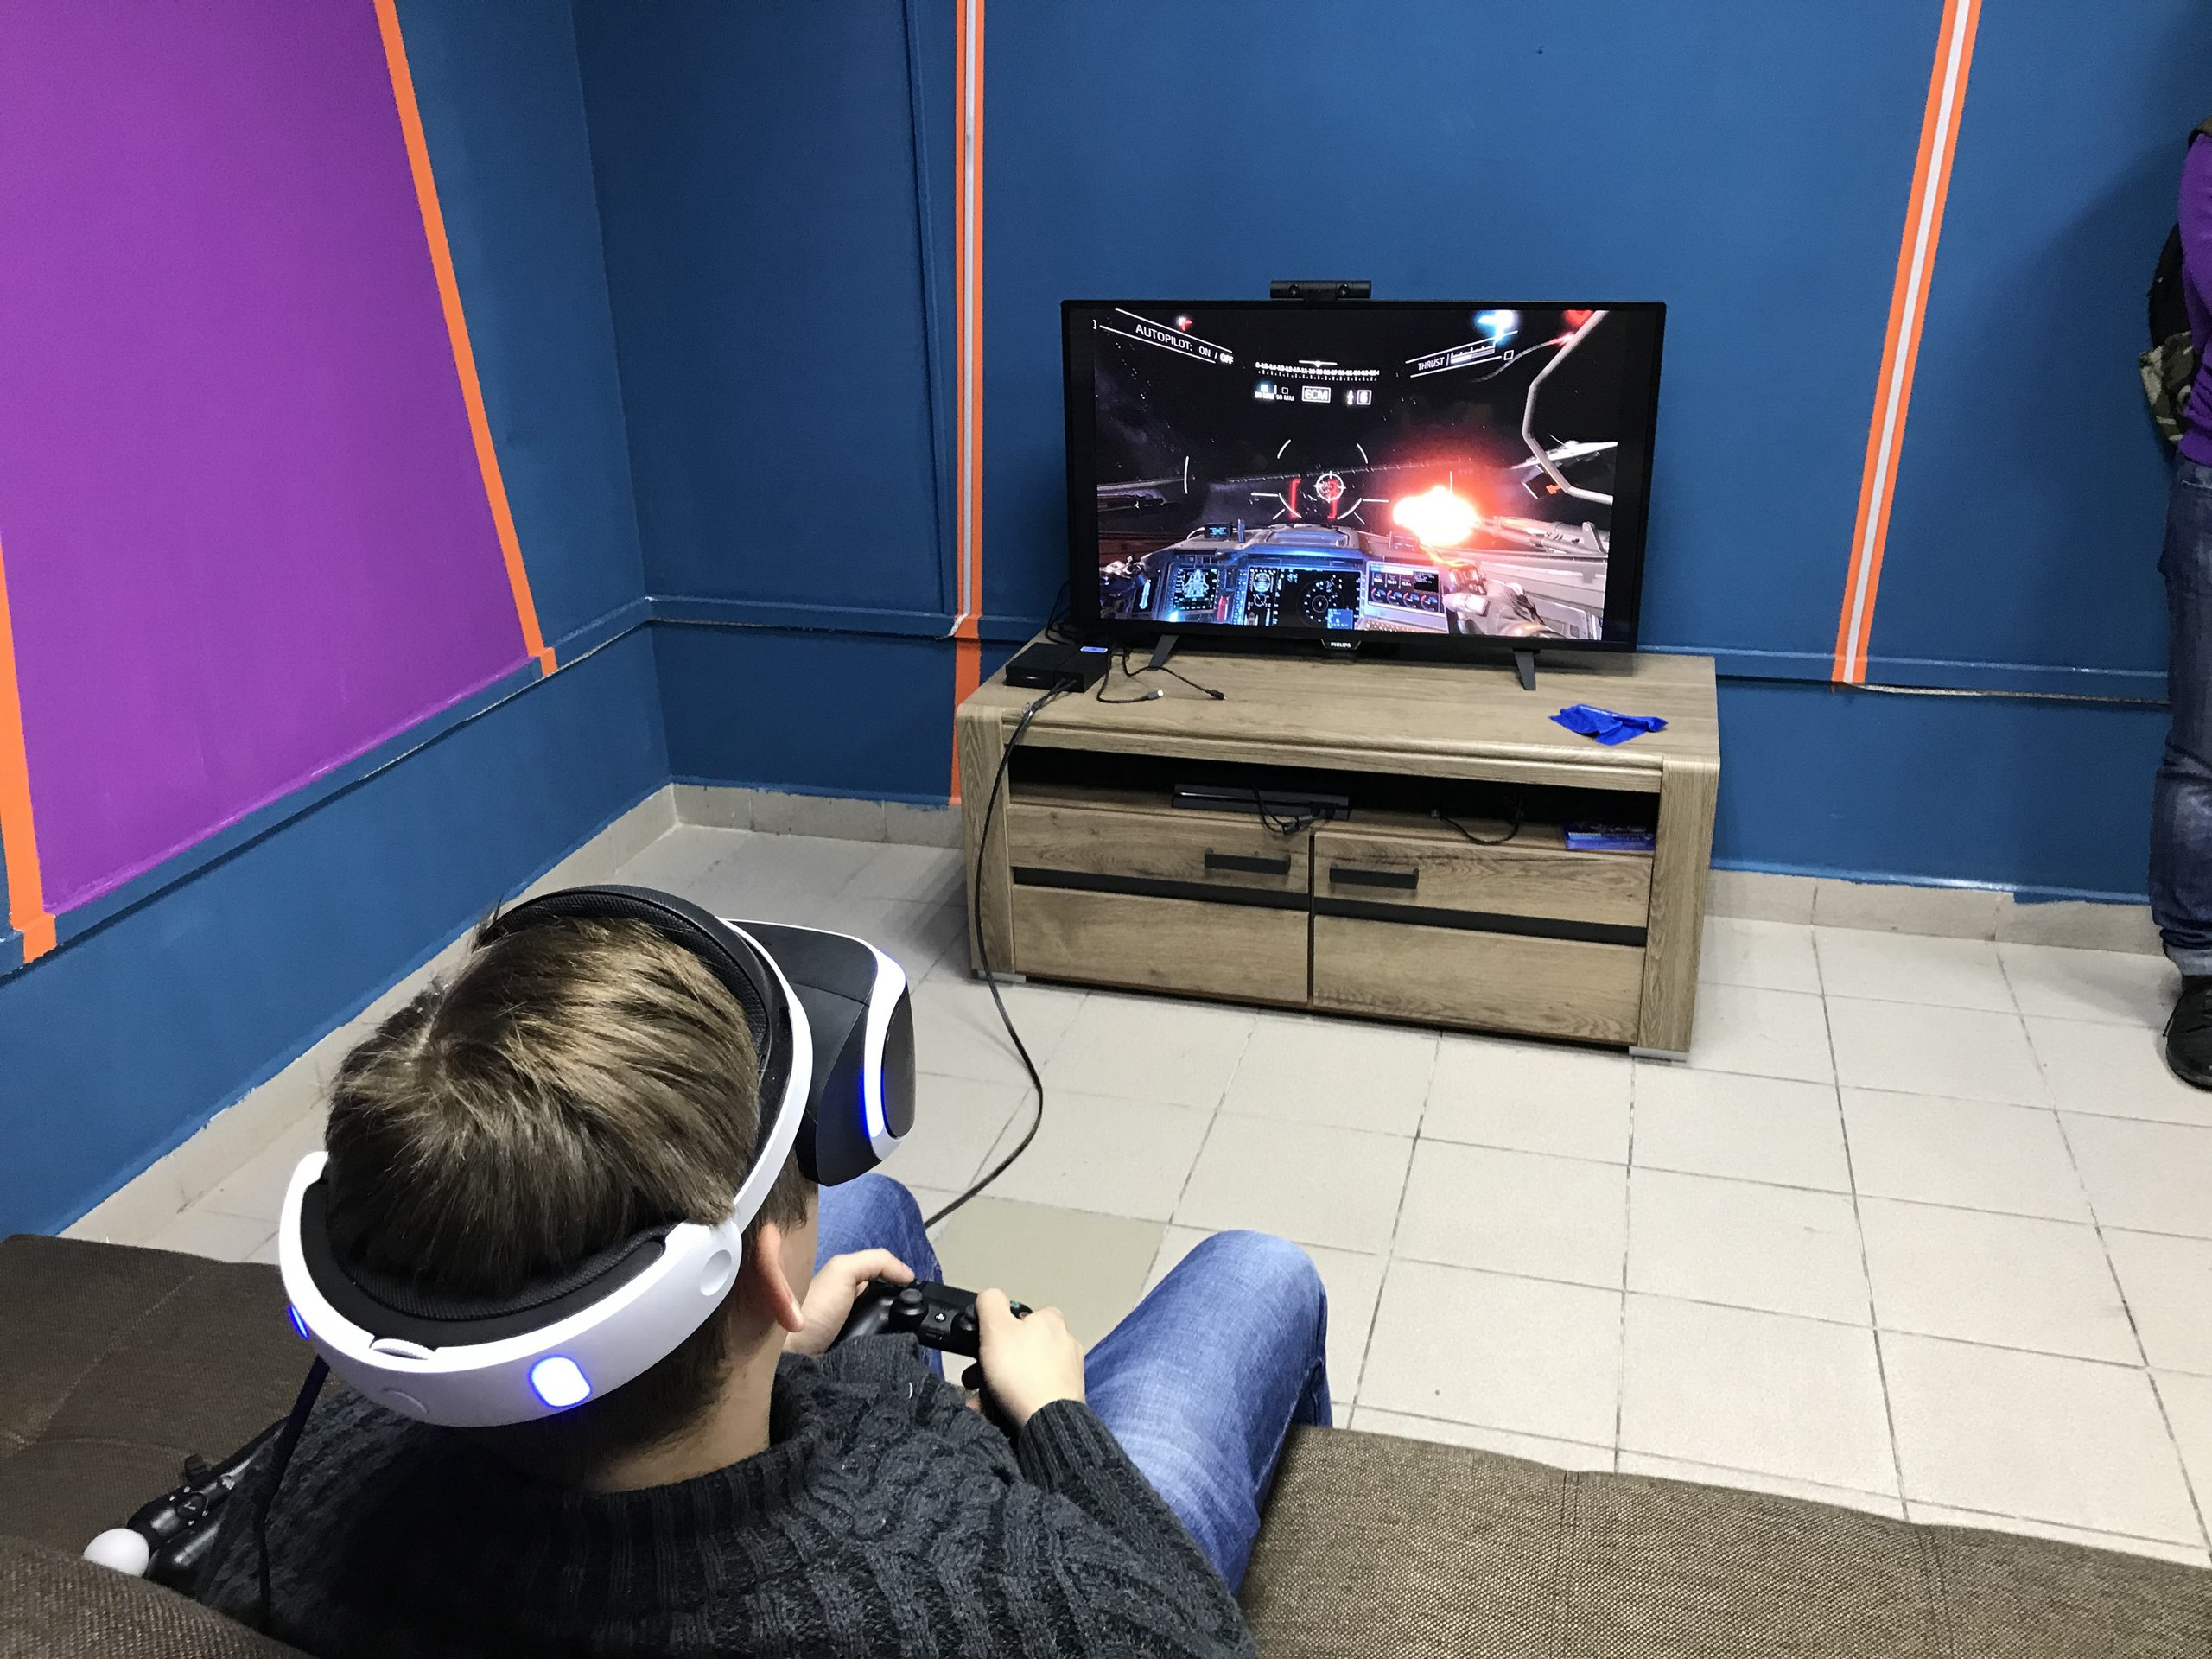 Игры очки виртуальной реальности играть. Сони плейстейшен ВР. Шлем плейстейшен VR. Игровой зал плейстейшен 4. VR очки Sony PLAYSTATION 4 игры.